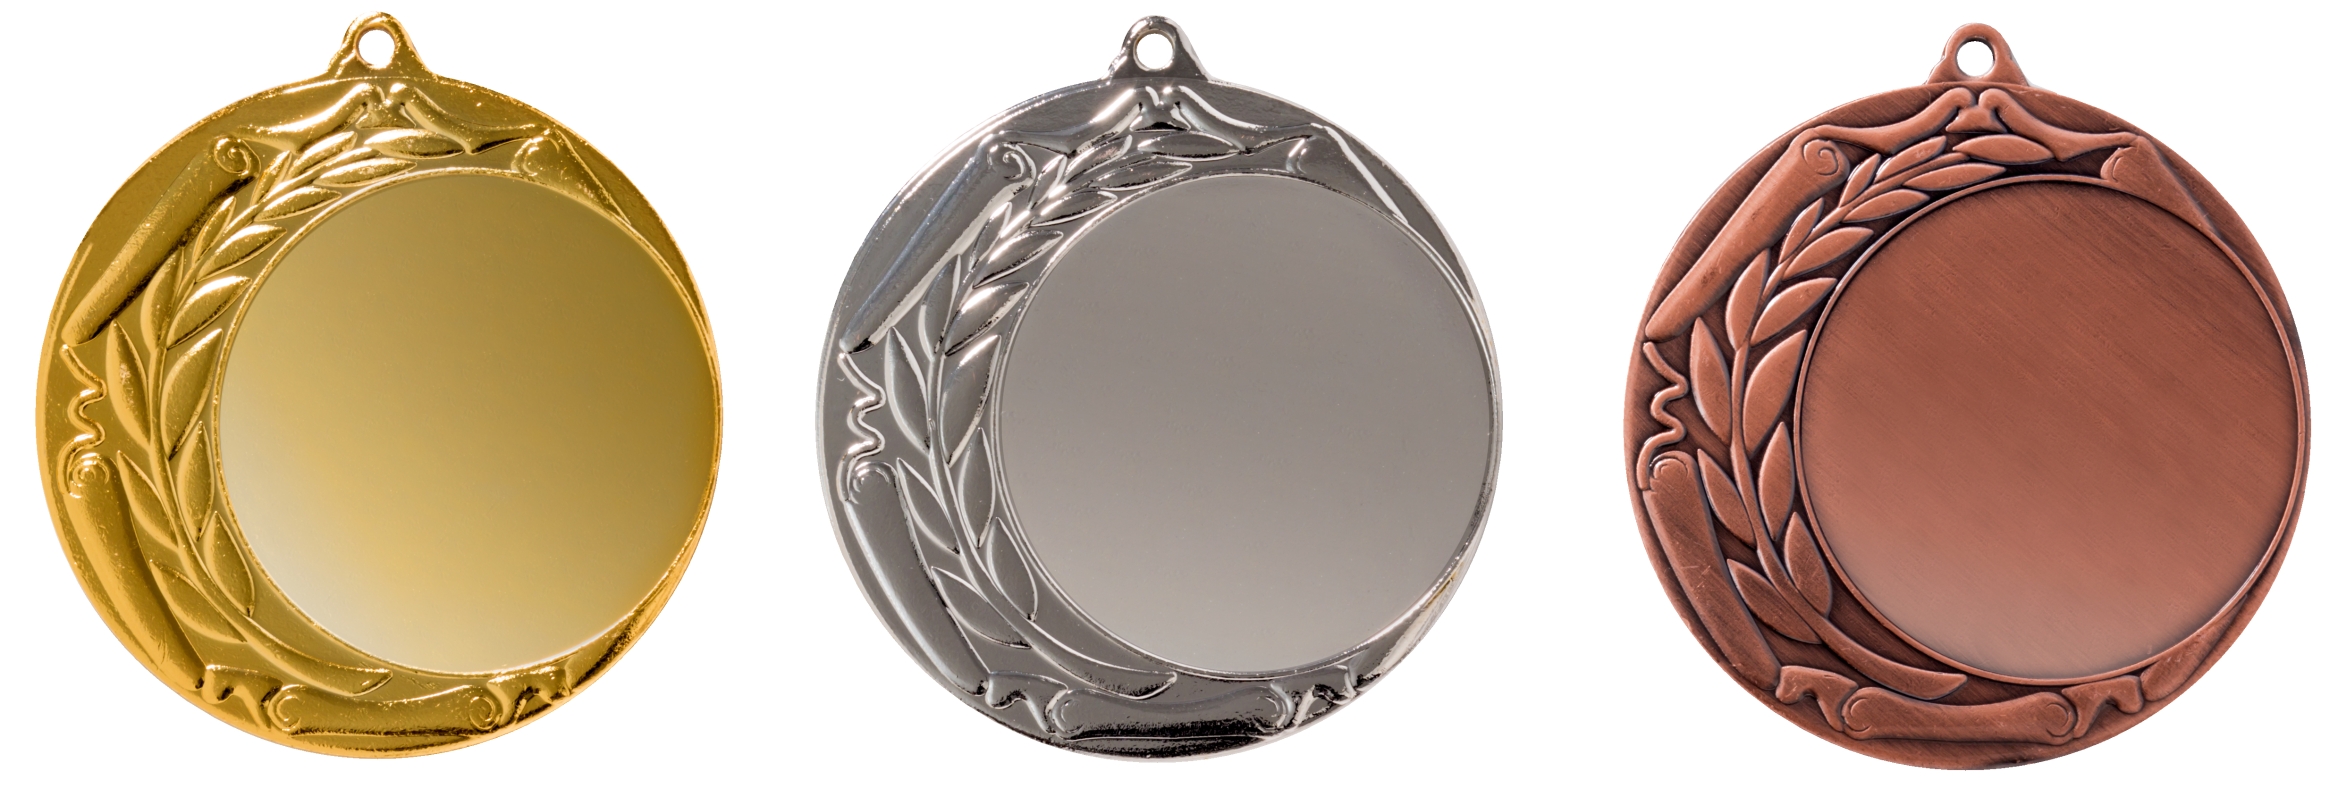 Eisen Medaille 70mm Lieferbar in Gold-Silber - Bronze